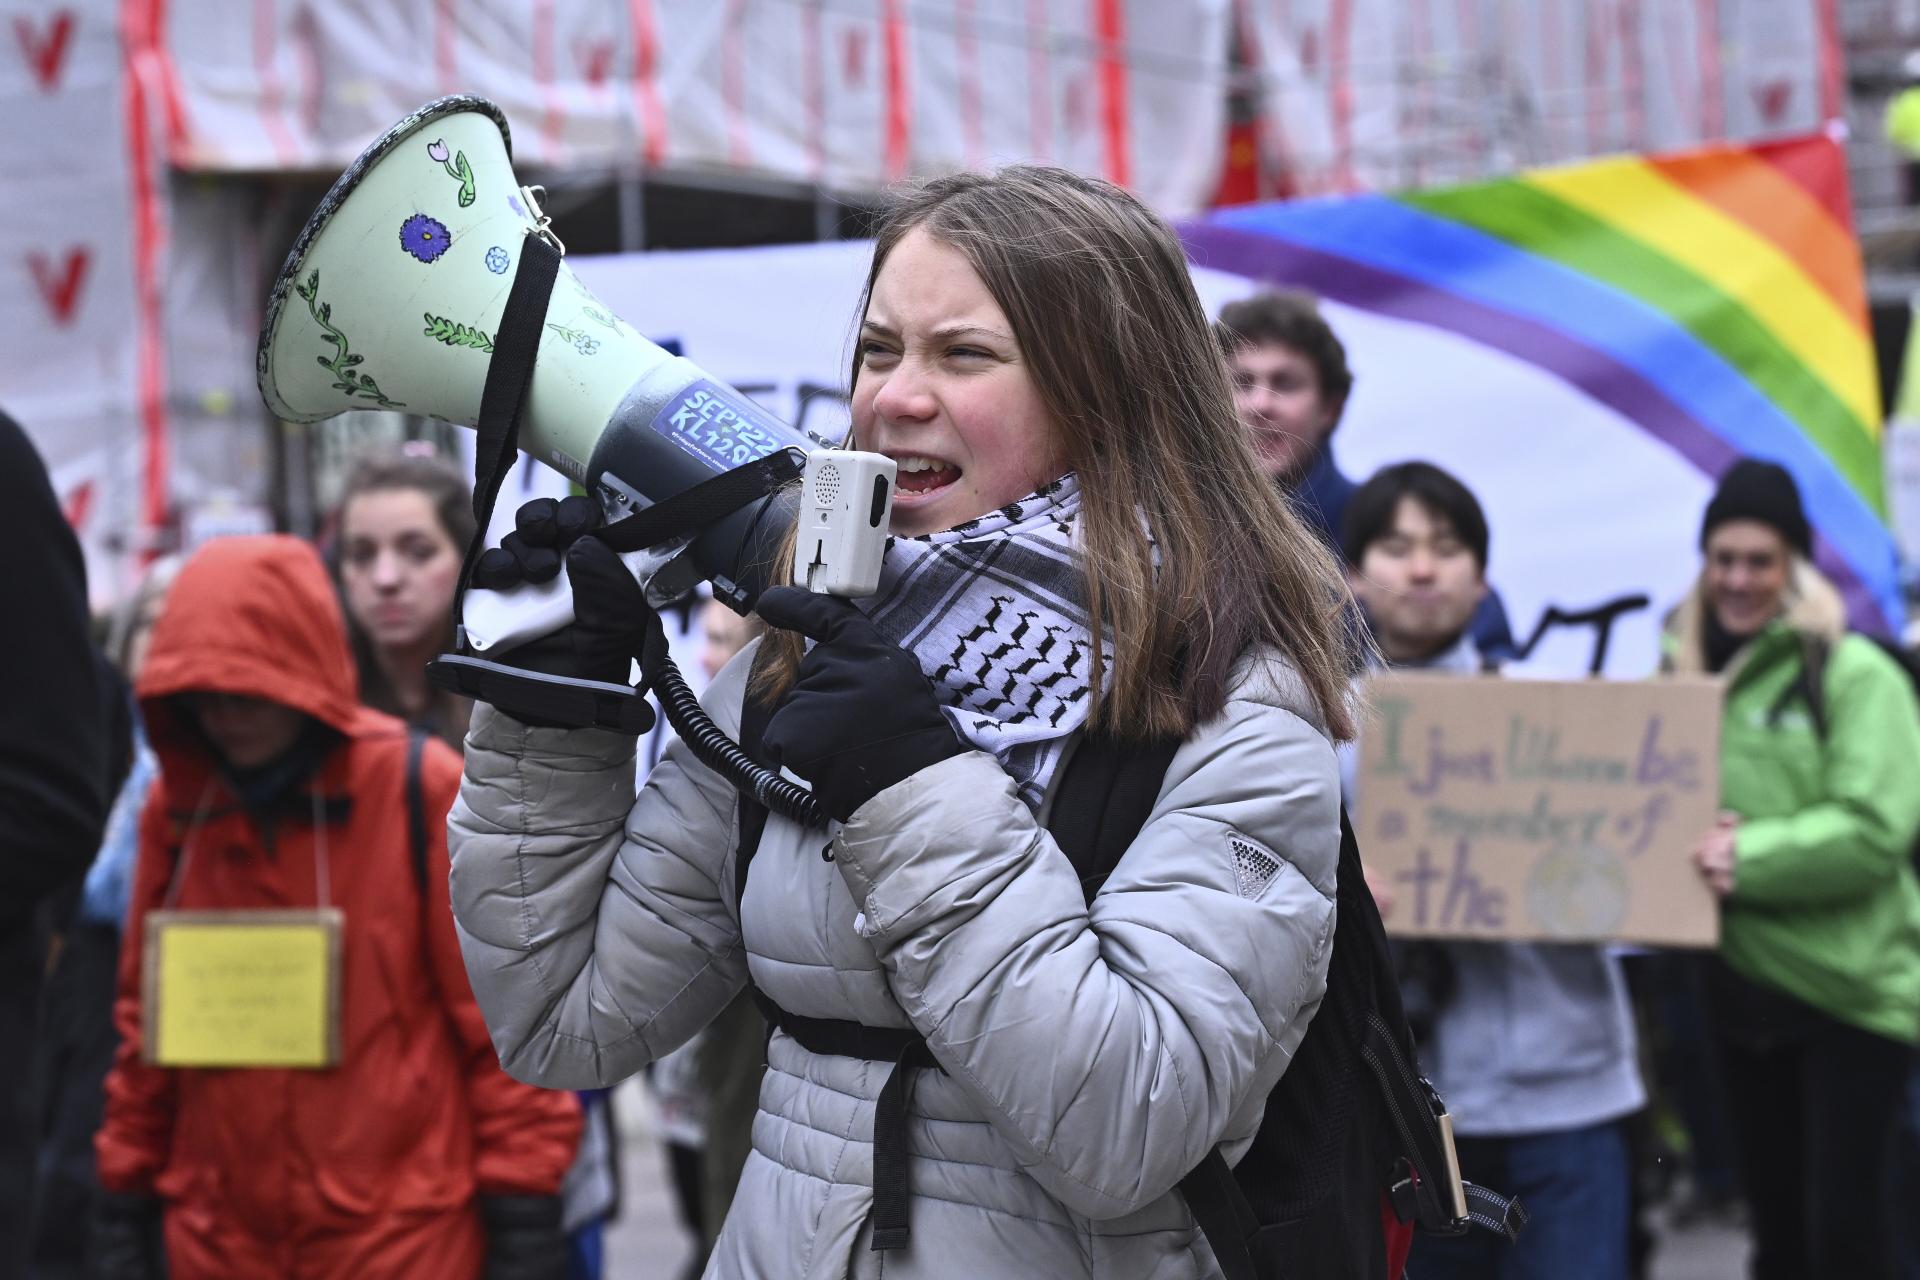 Demonštranti vo Švédsku vyzývali politikov, aby sa viac zaoberali zmenou klímy